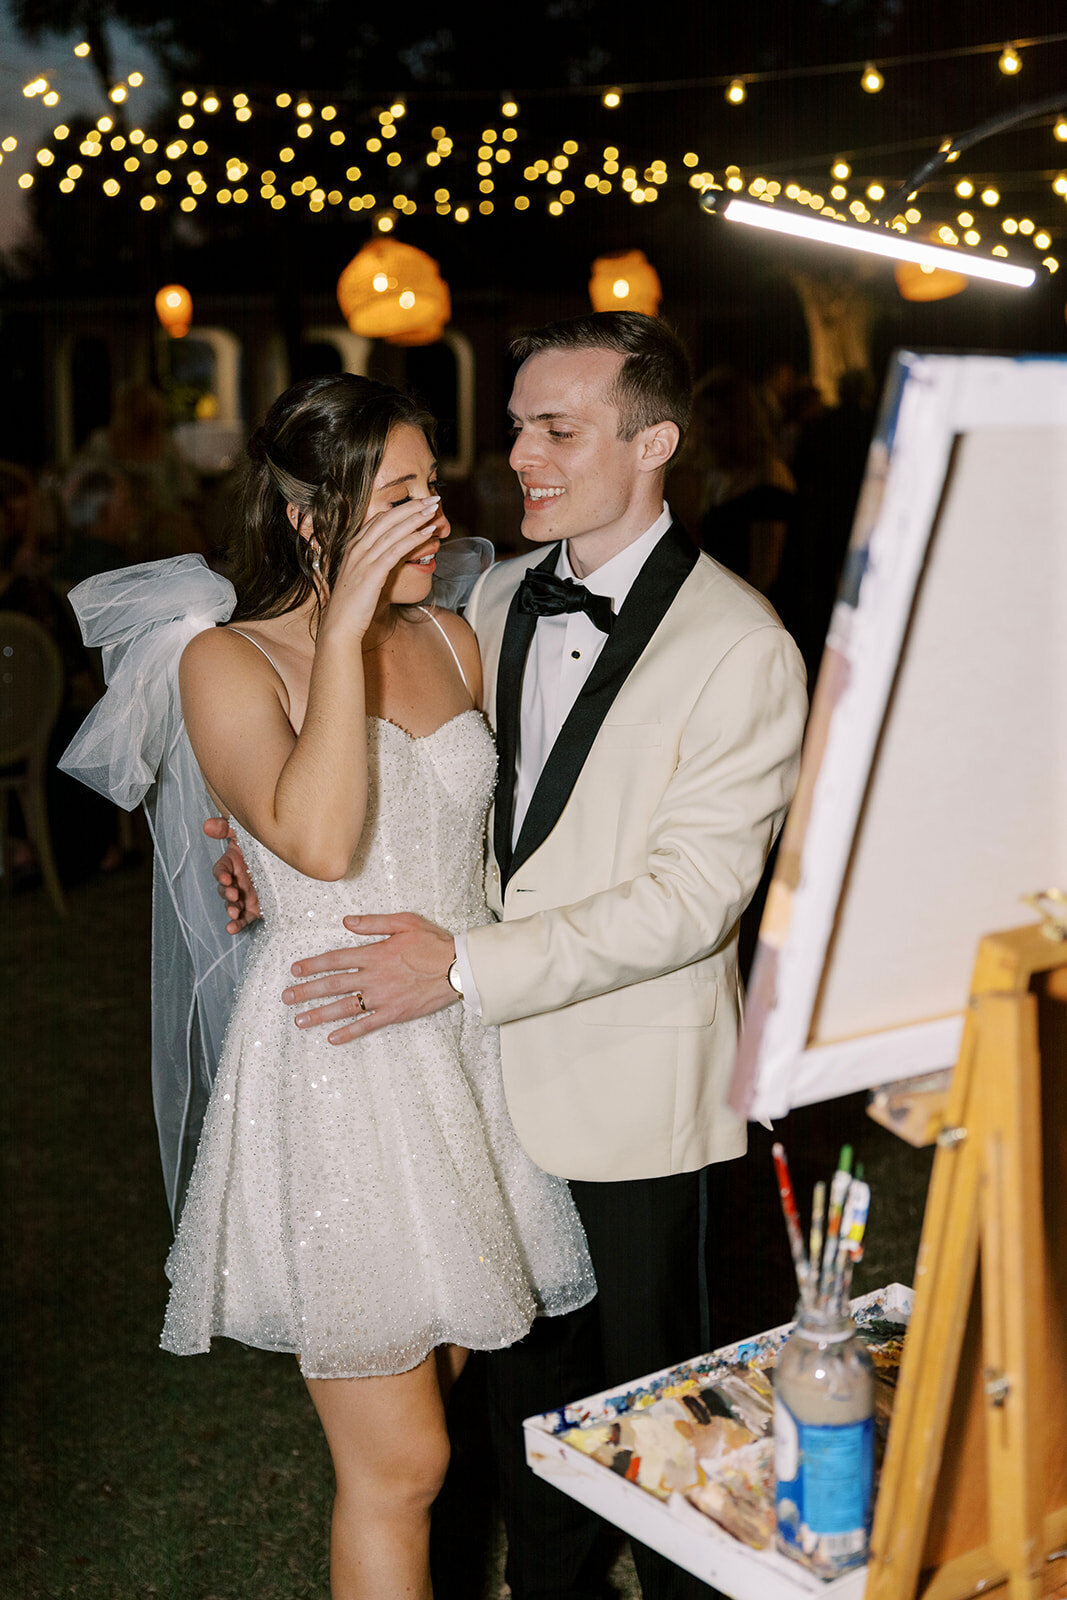 CORNELIA ZAISS PHOTOGRAPHY COURTNEY + ANDREW WEDDING 1553_websize